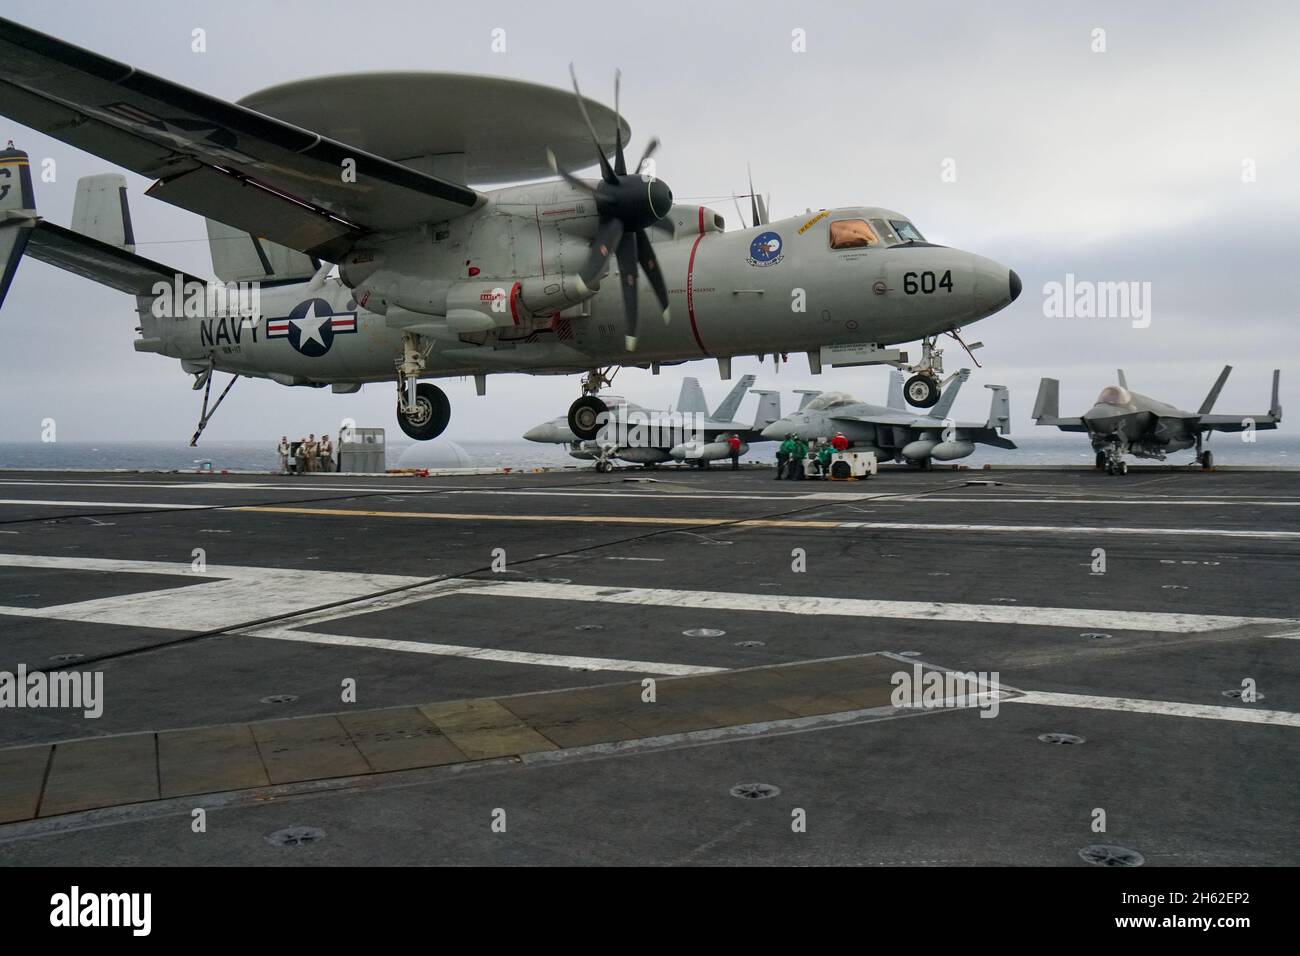 Un avión E-2D Hawkeye de alerta temprana y detección aterriza en la cubierta de un portaaviones de la Marina de los Estados Unidos Foto de stock